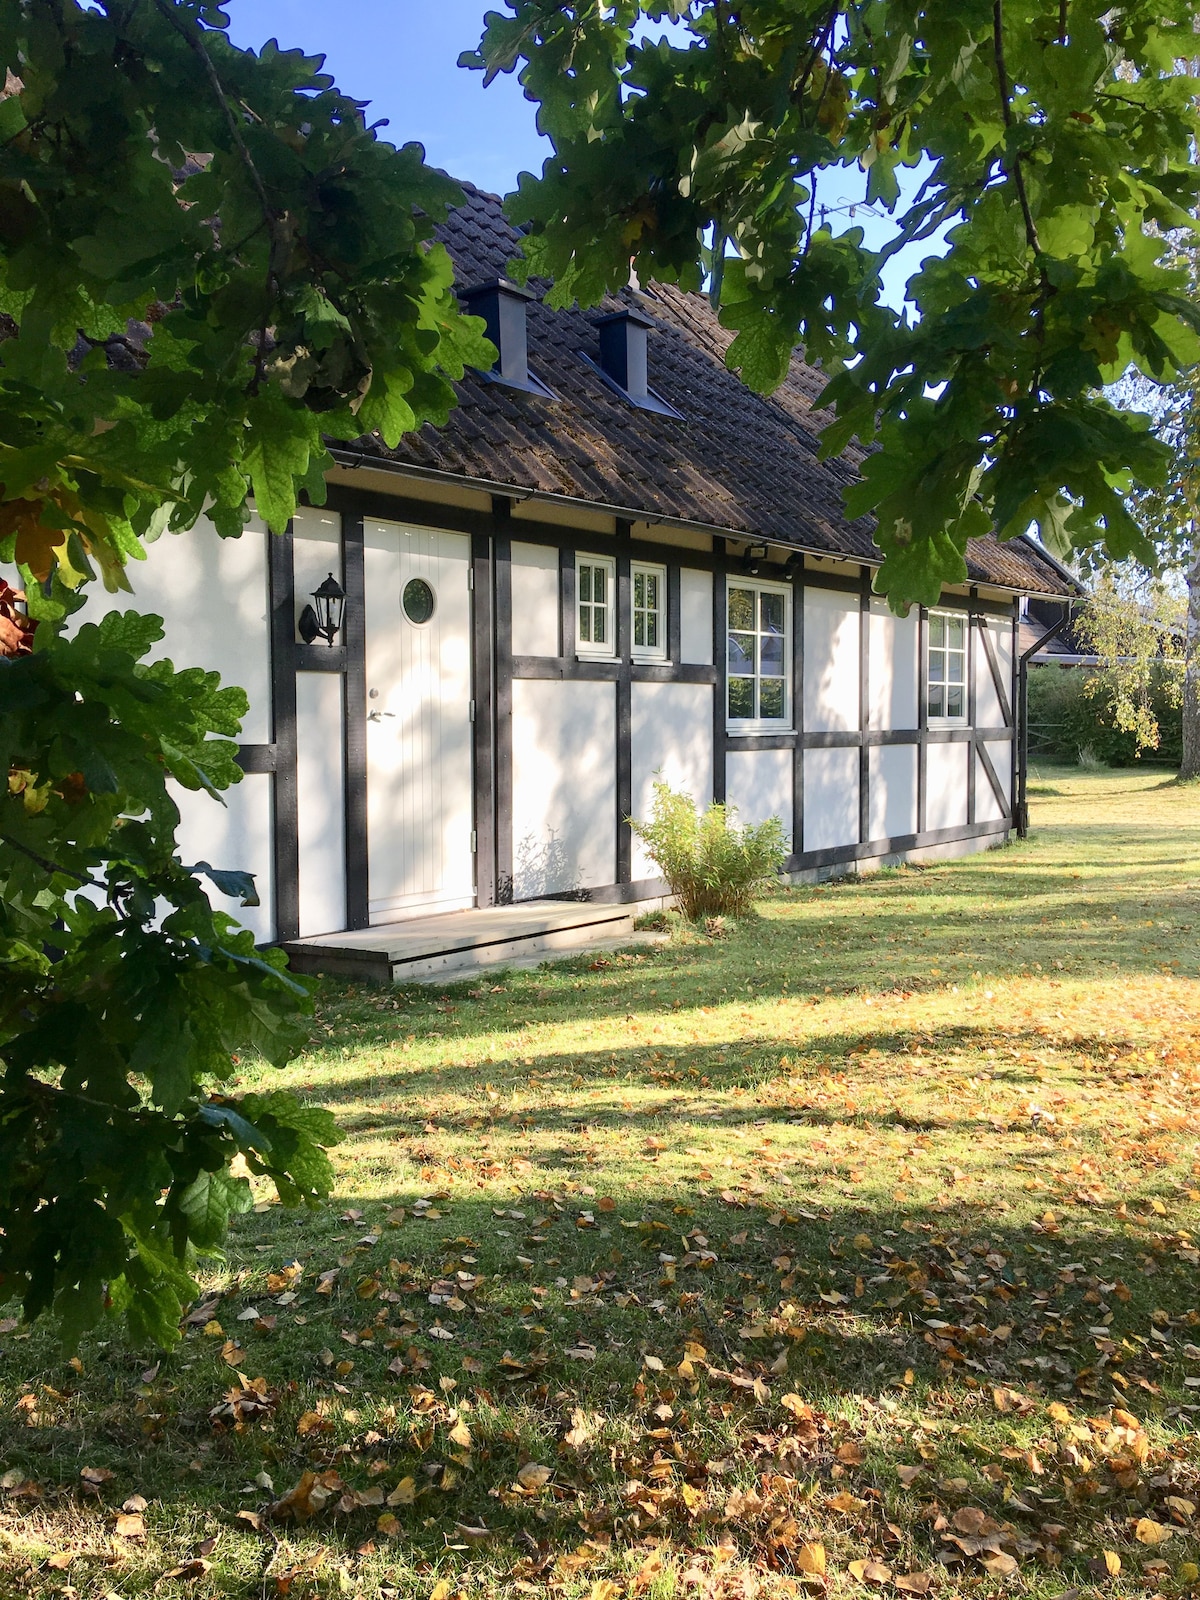 Typical Skåne house near the beach in Båstad